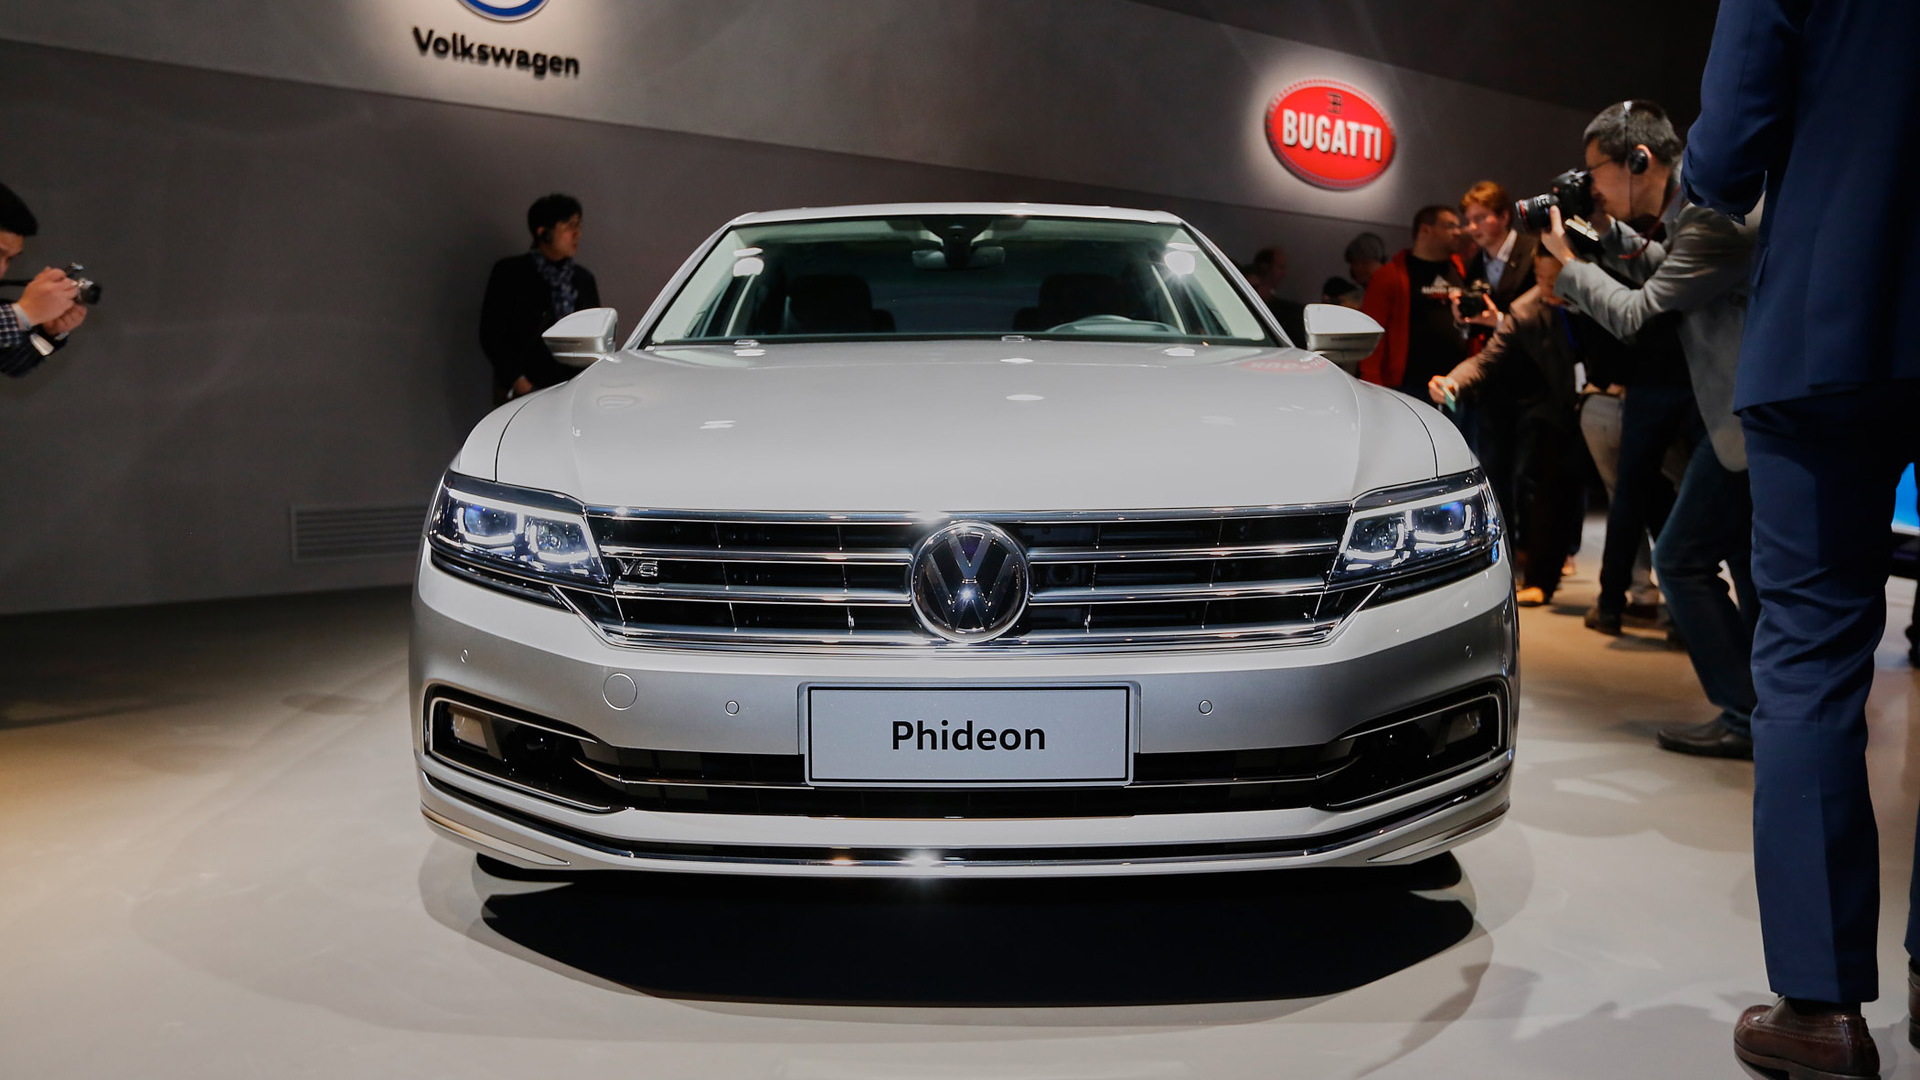 2017 Volkswagen Phideon, 2016 Geneva Motor Show